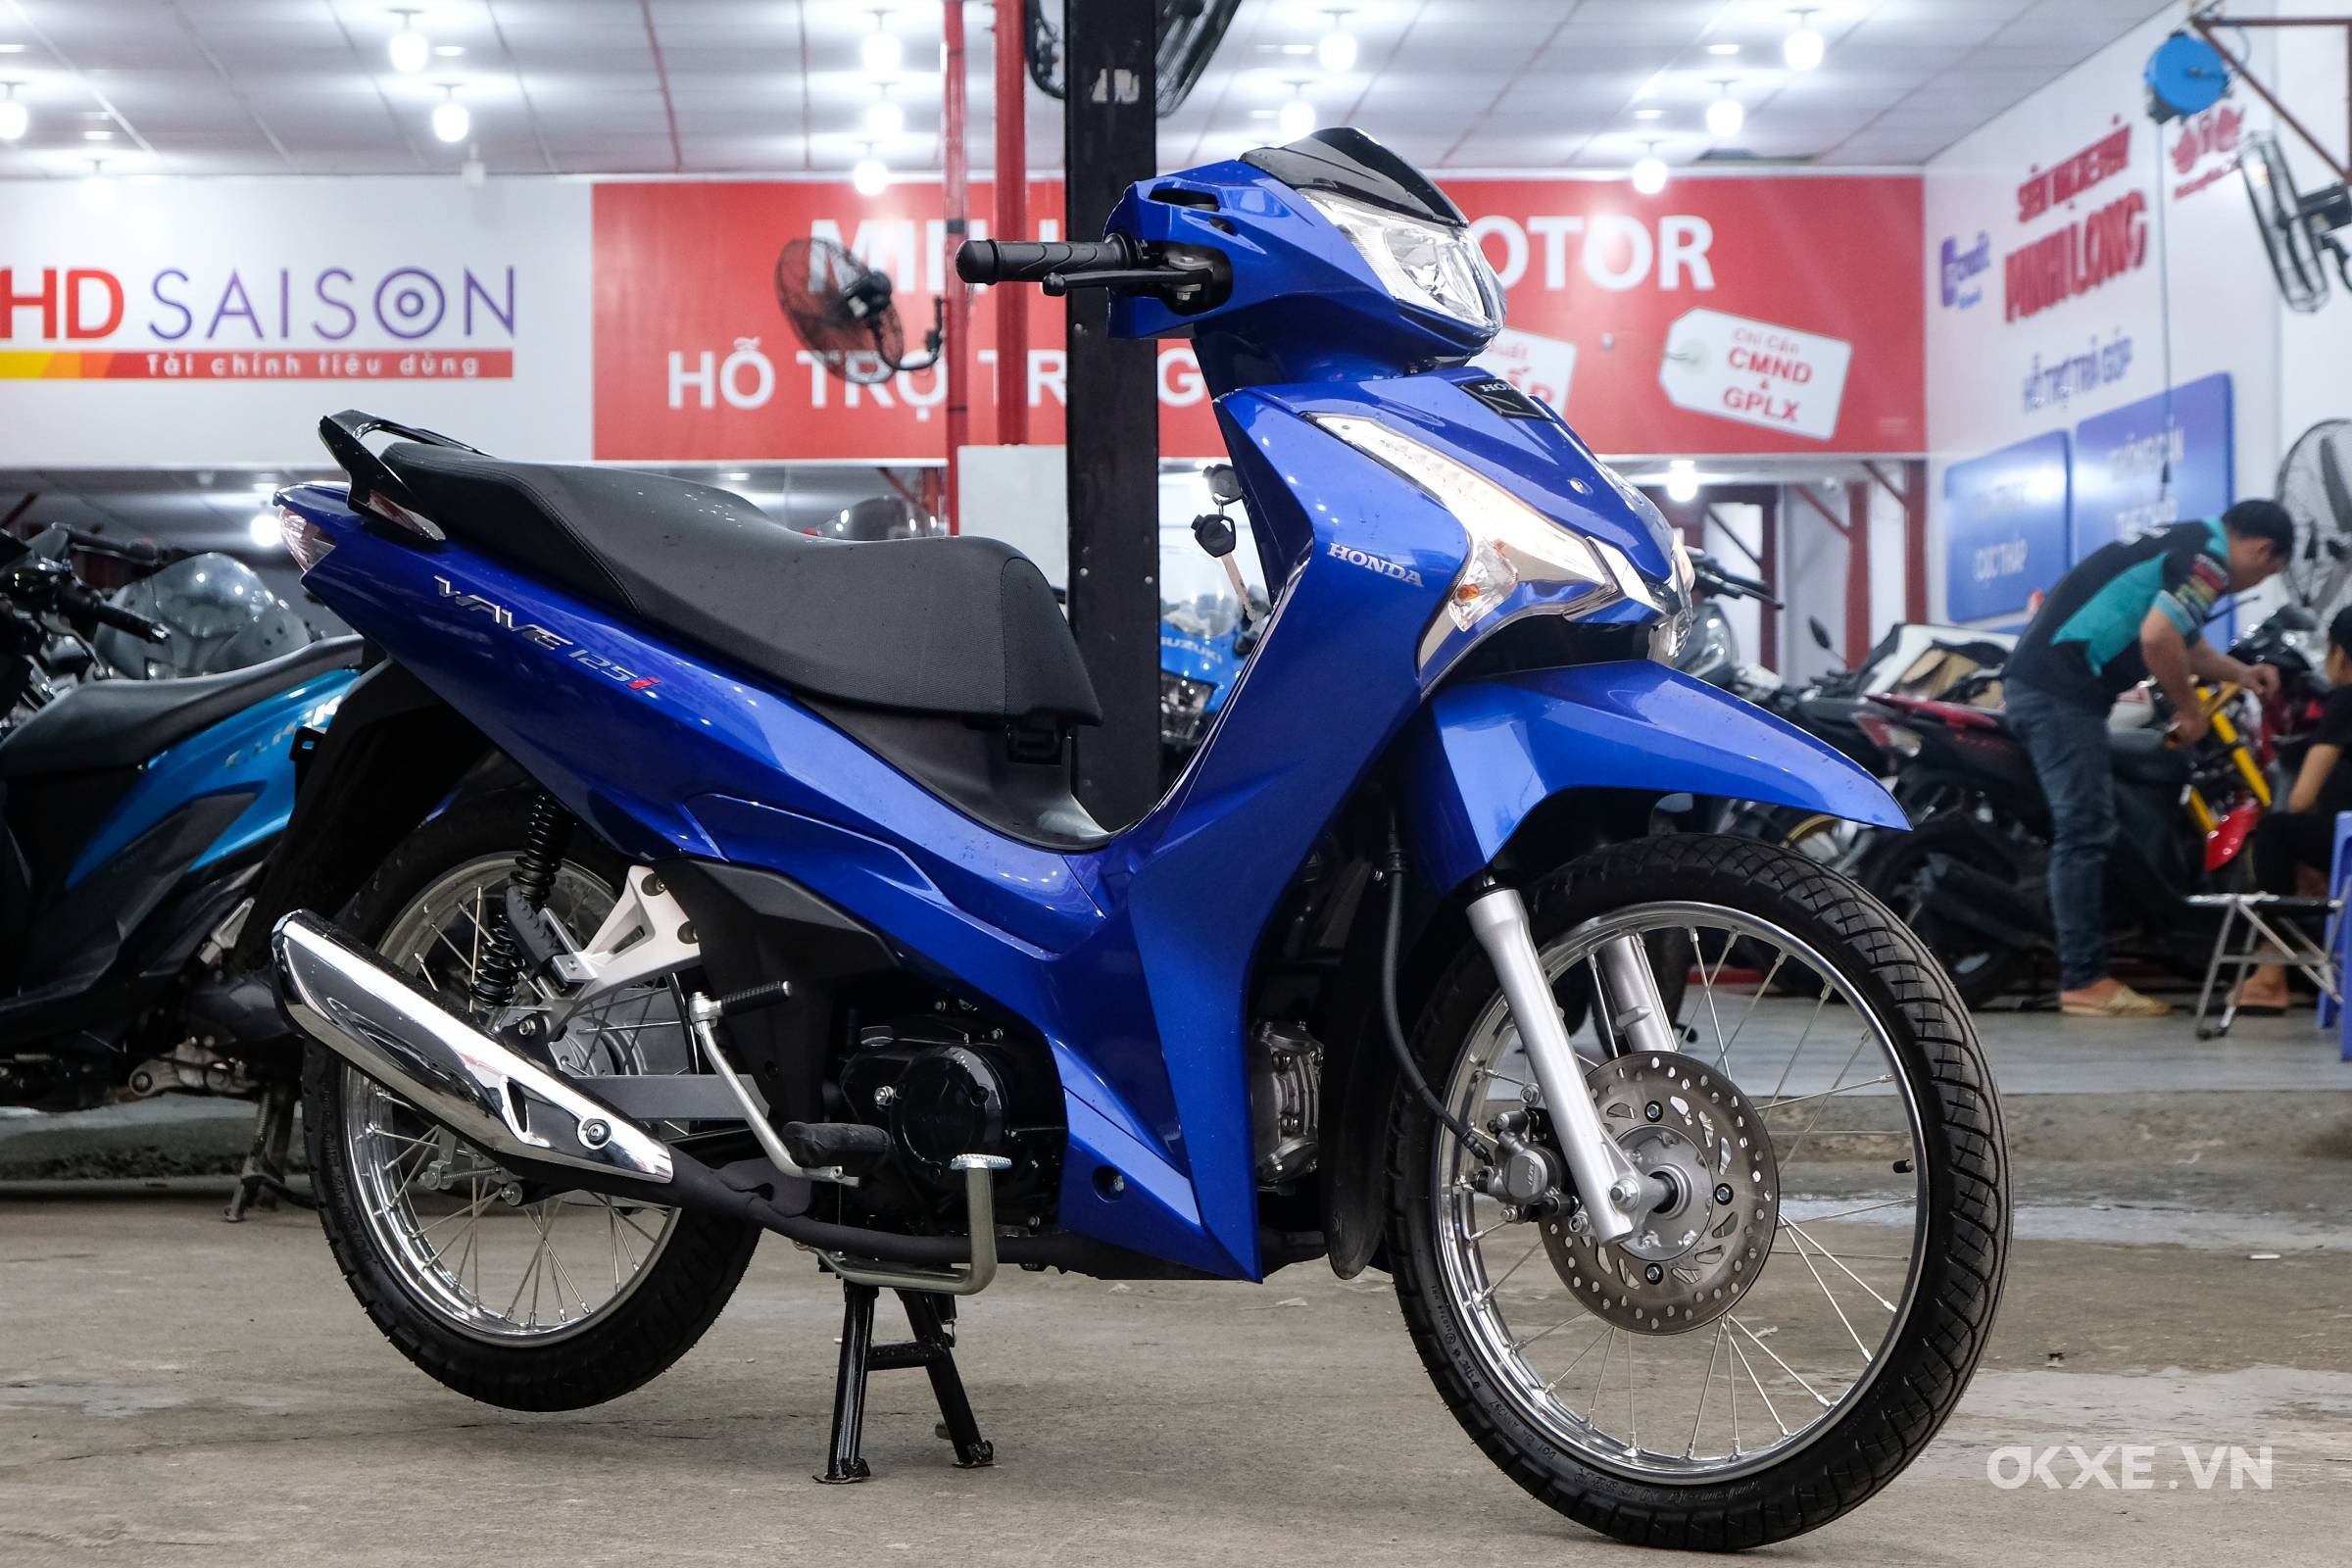 Honda Wave 125i nhập khẩu về Việt Nam giá cao nhất 82 triệu đồng